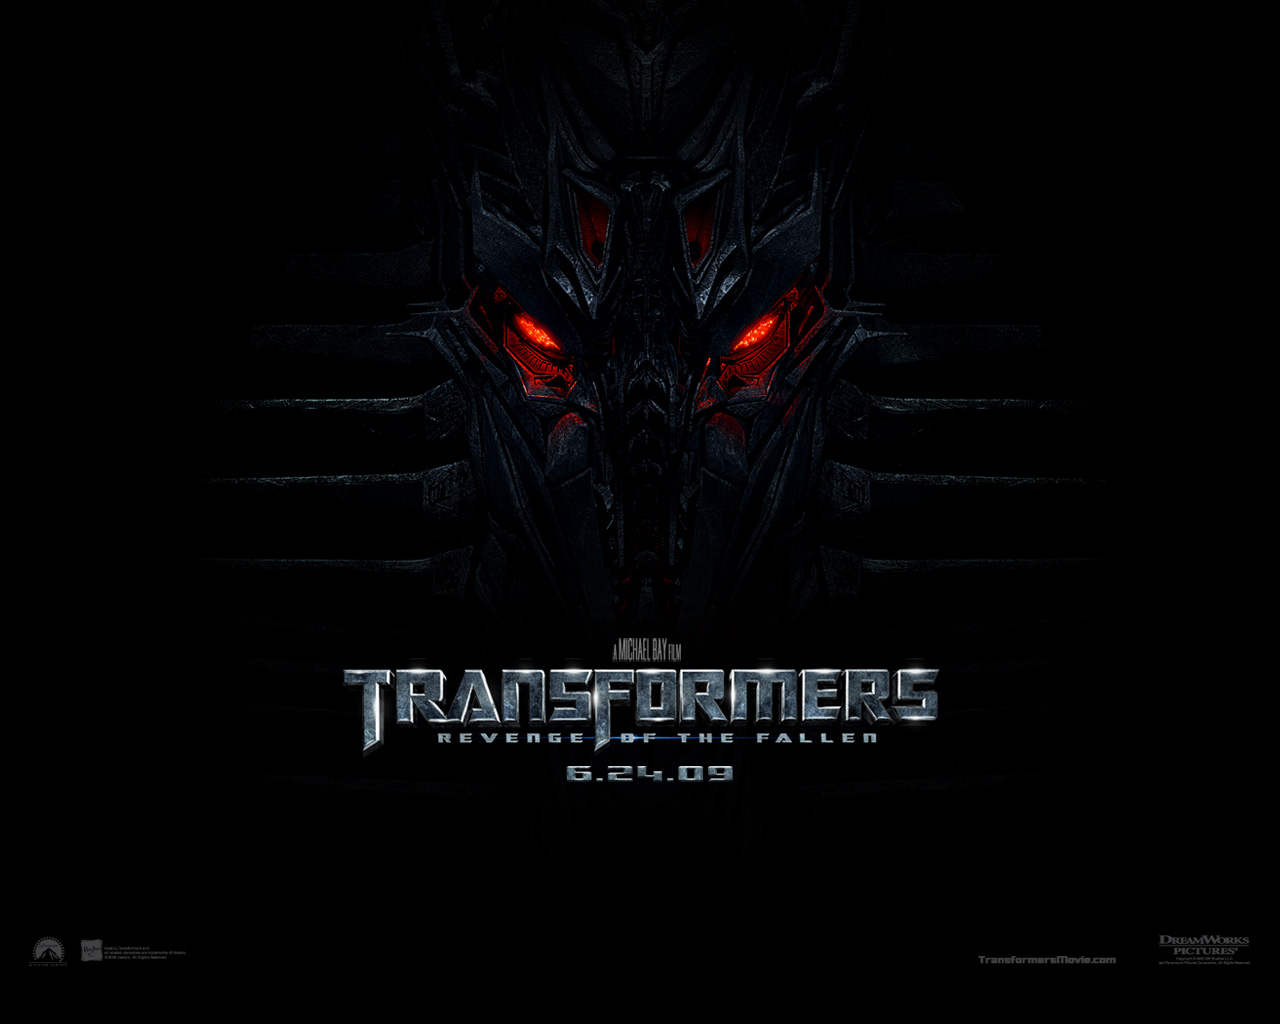 تبدیل شوندگان (Transformers)